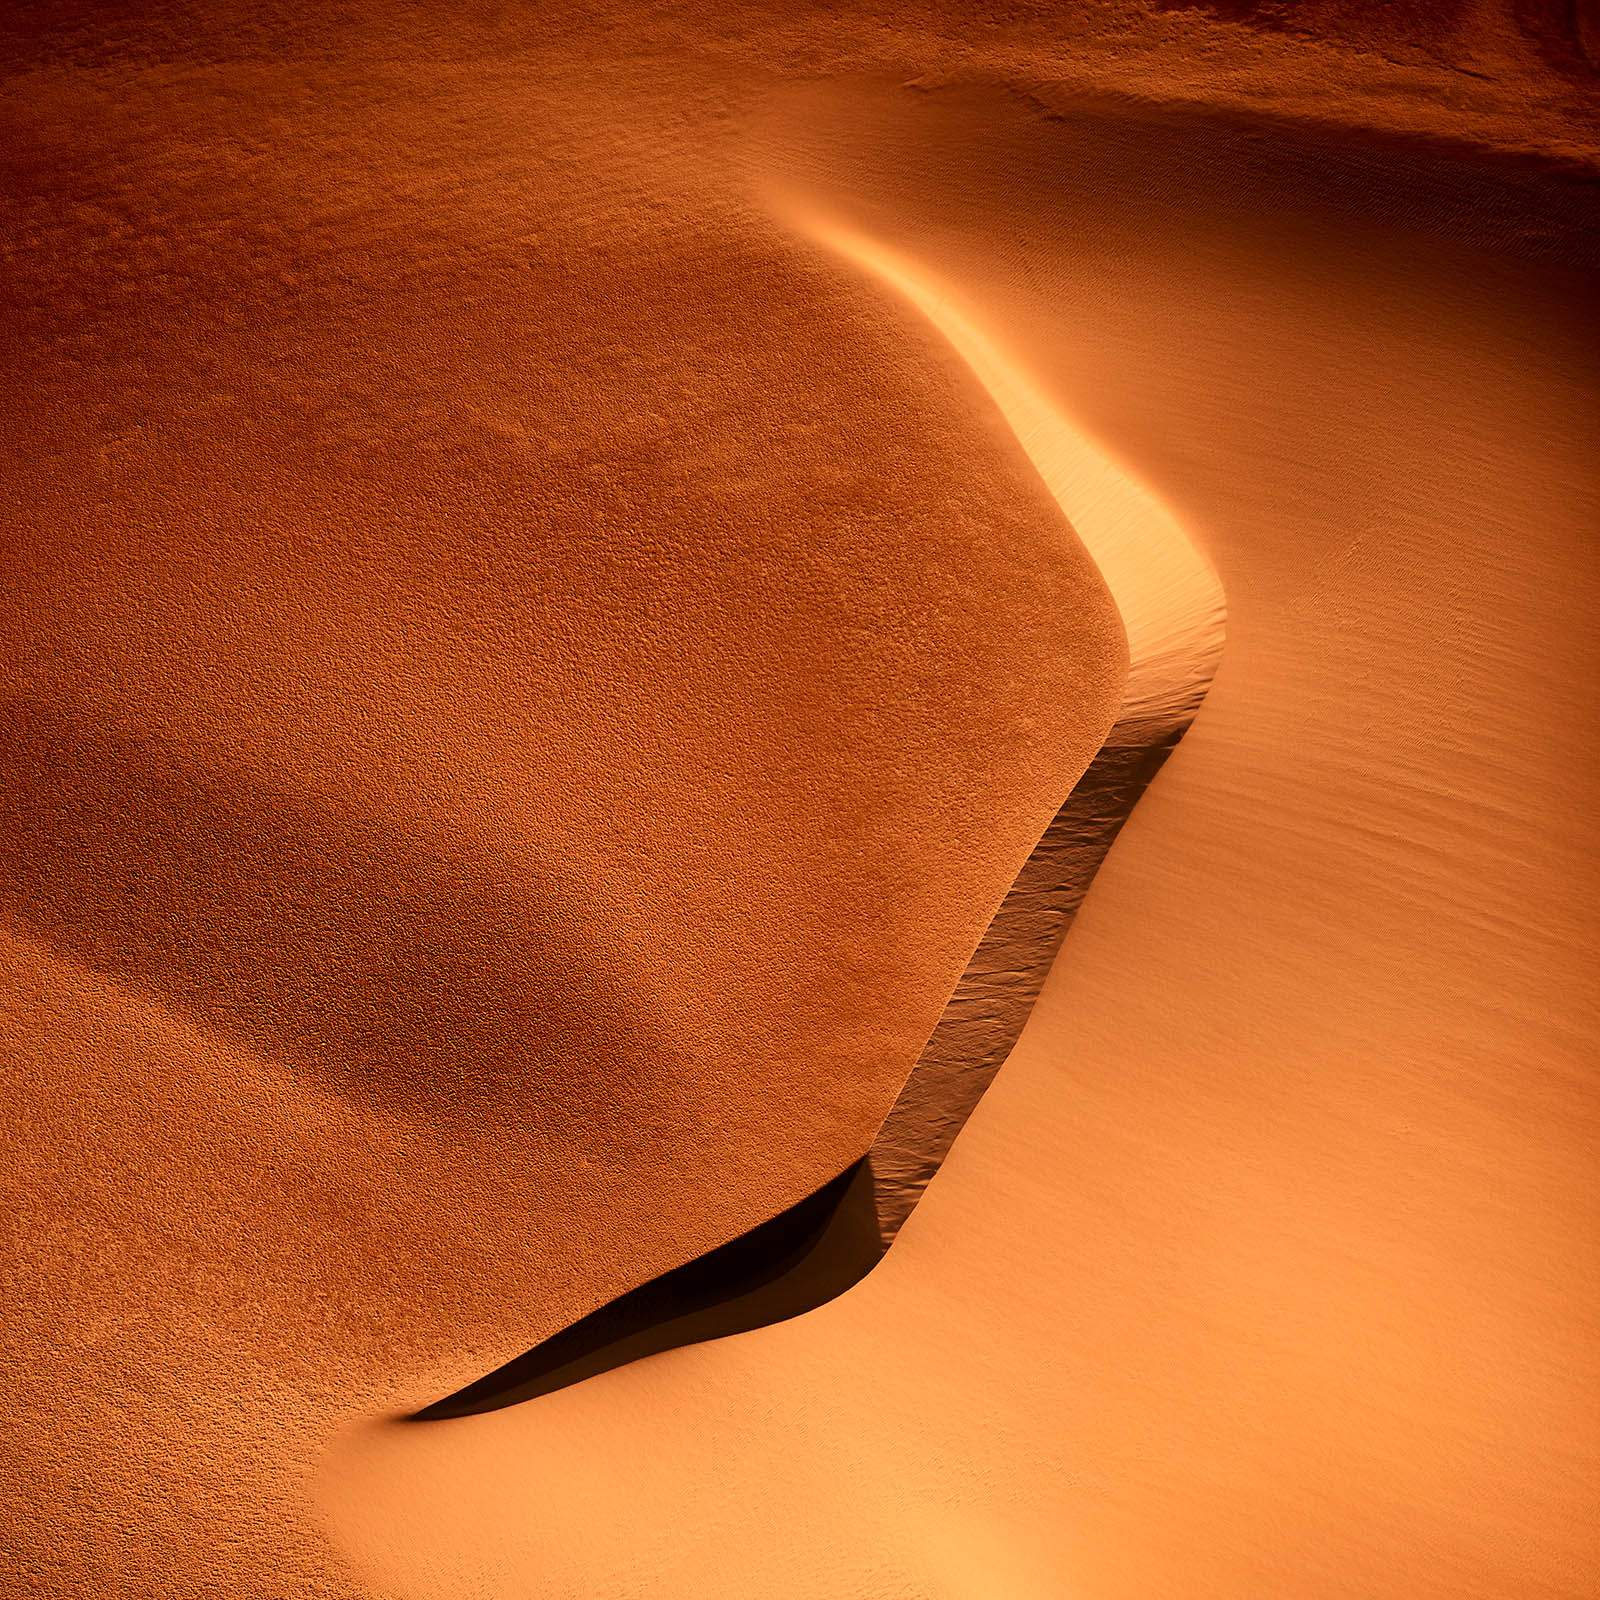 "Red Sand" Luftbild der Wüste Namibias - Farbspiel in den schönsten Orangtönen